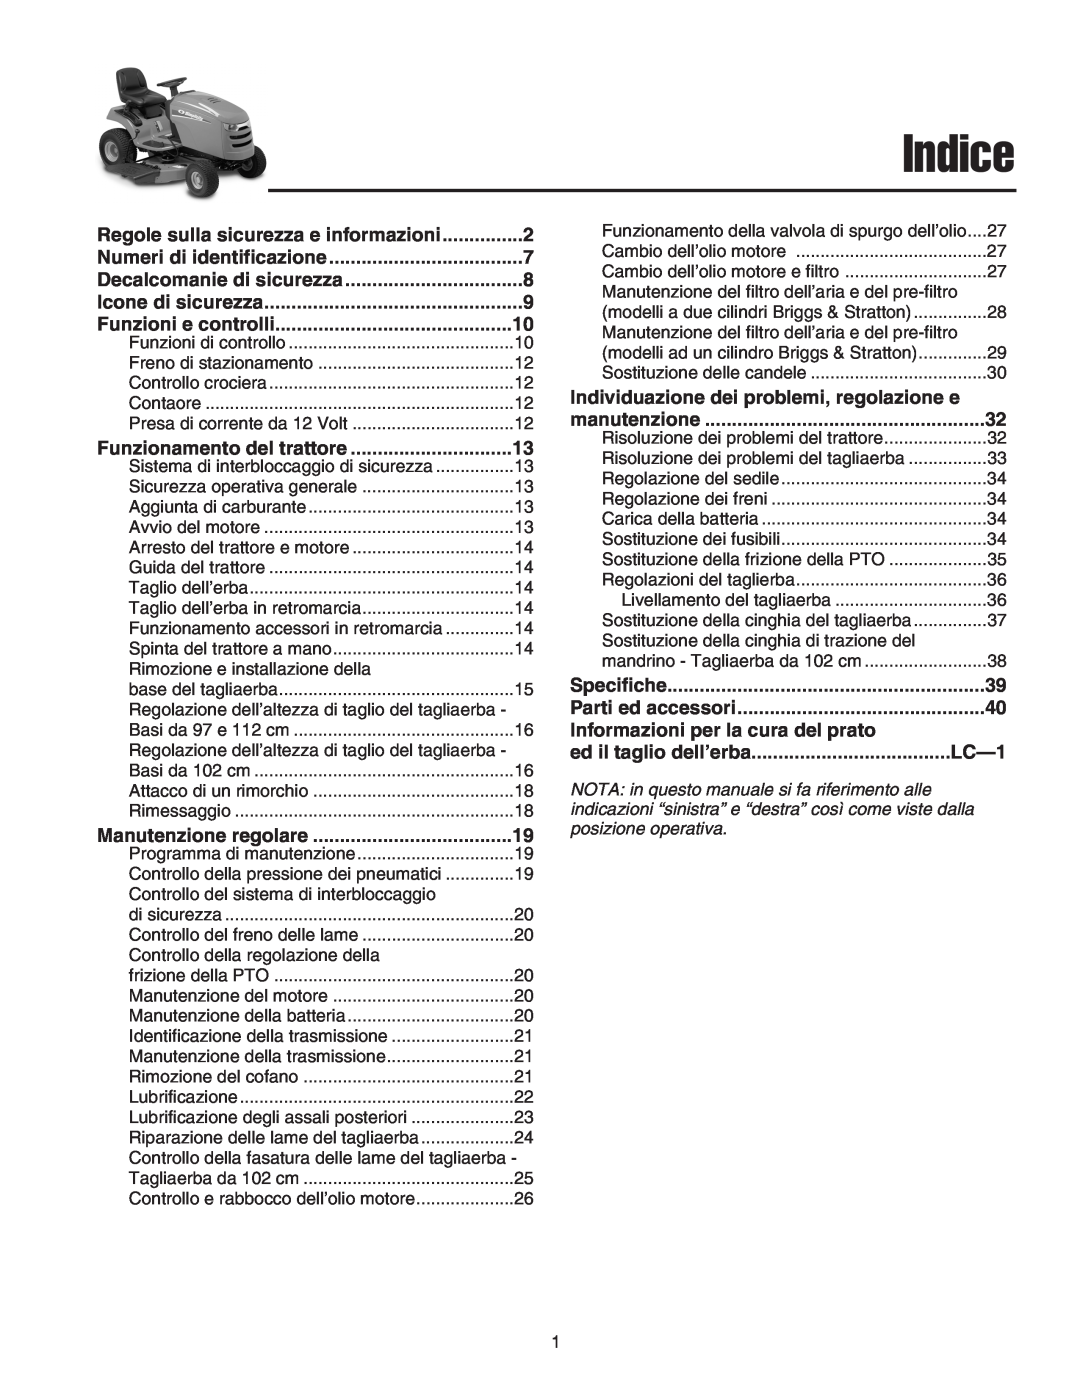 Briggs & Stratton Printer Indice, Funzioni e controlli, Informazioni per la cura del prato, ed il taglio dell’erba, LC-1 